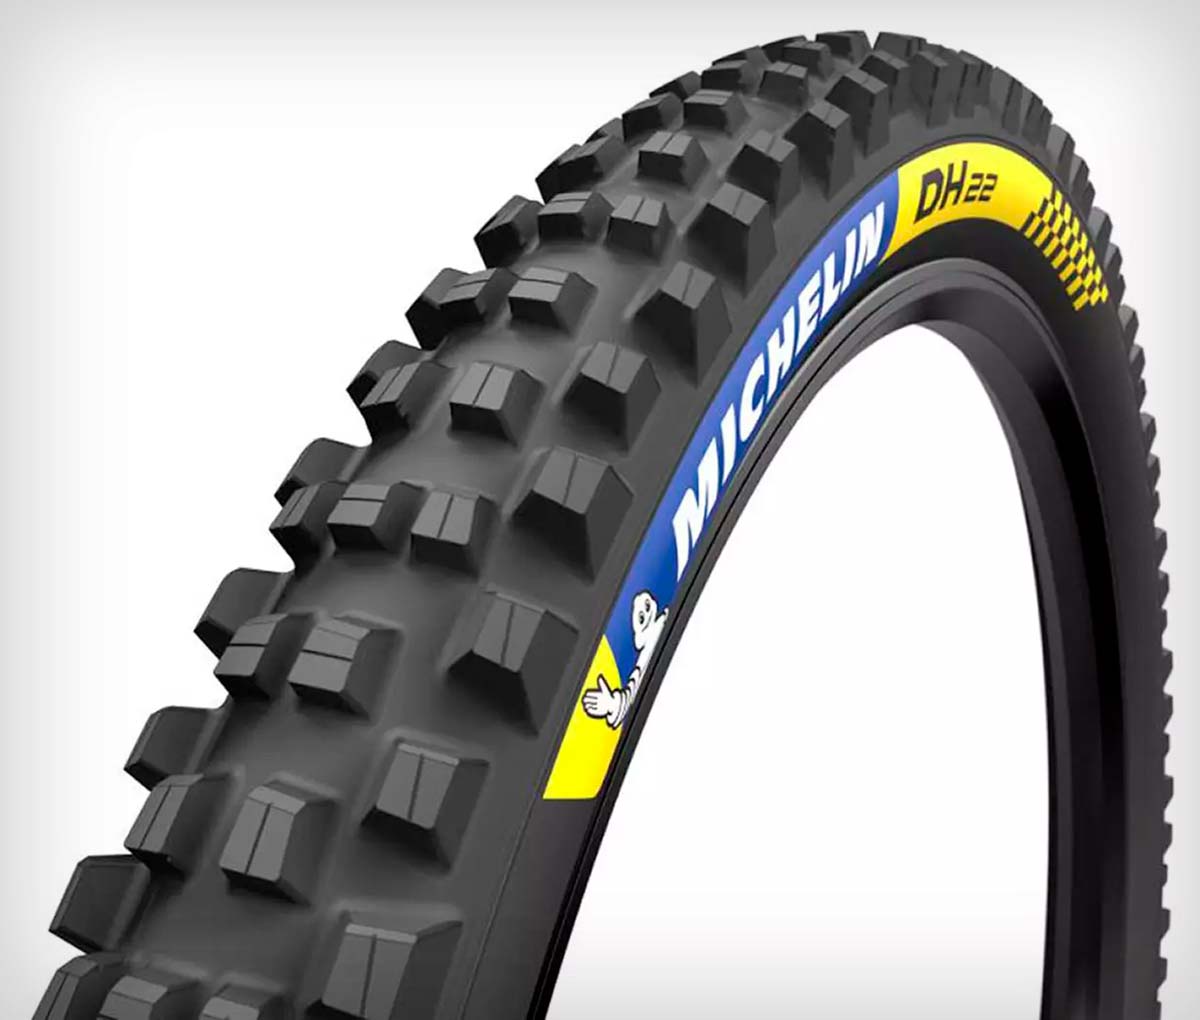 En TodoMountainBike: Michelin presenta su gama de neumáticos de Descenso DH 22, DH 34 y DH Mud